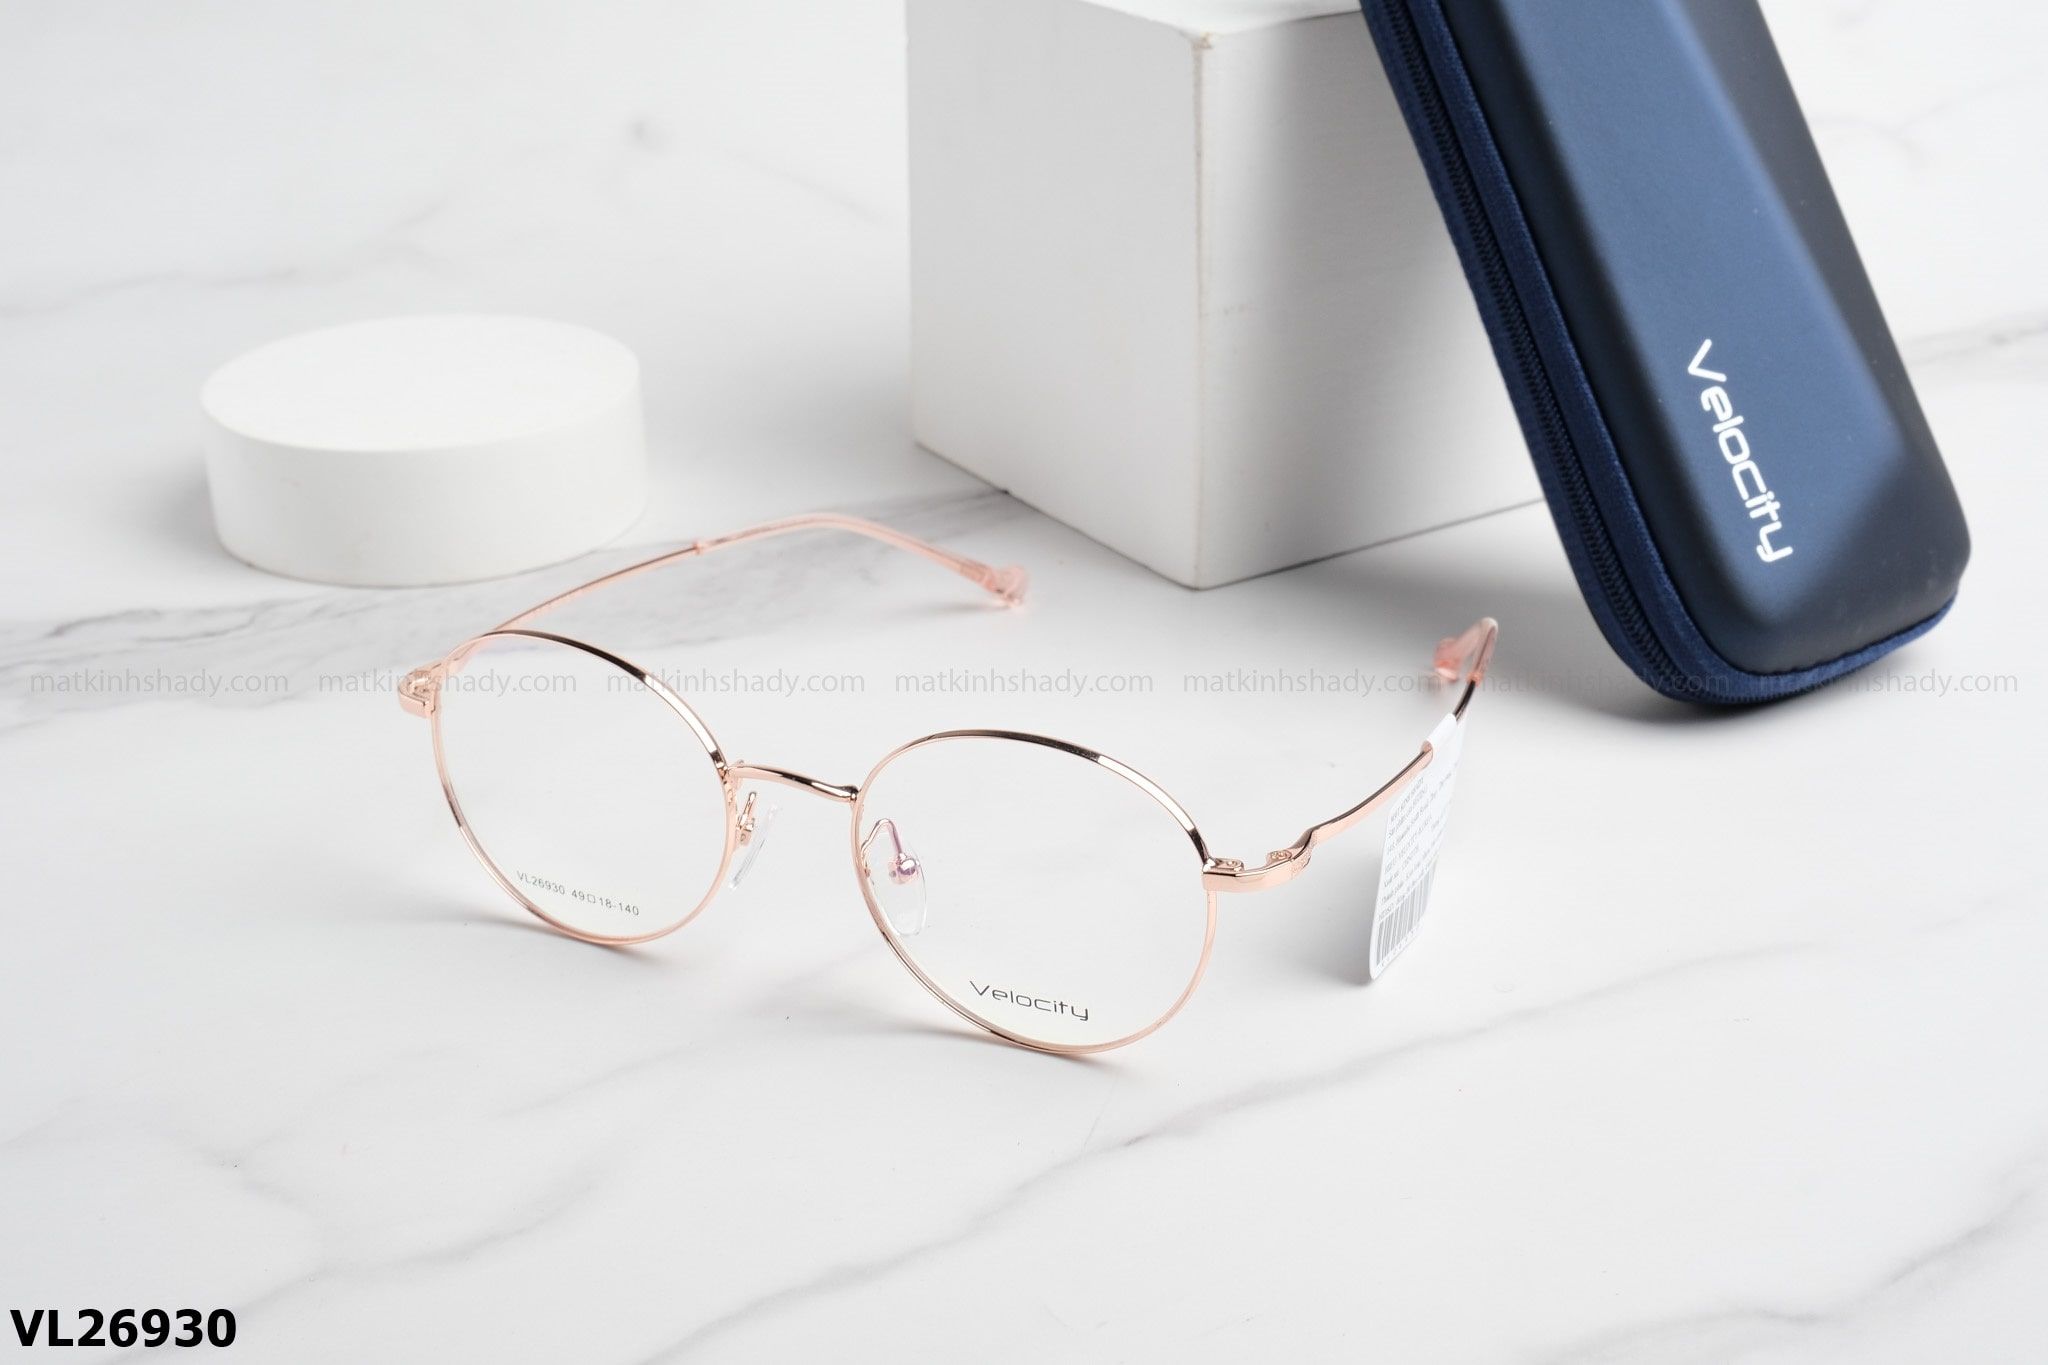  Velocity Eyewear - Glasses - VL26930 